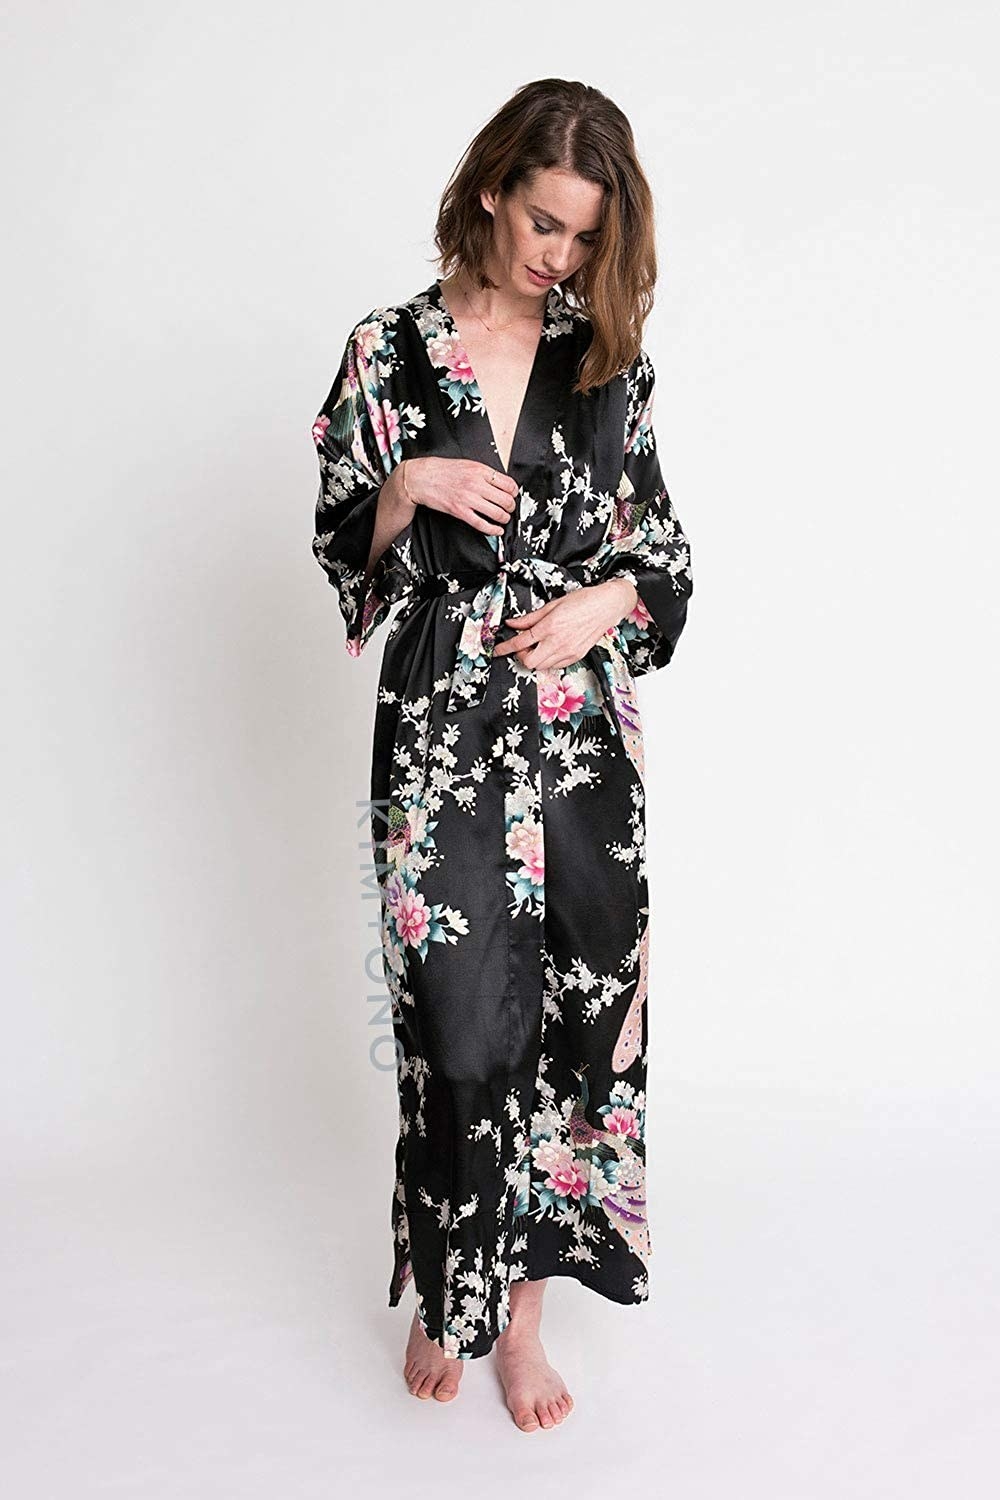 A model wears the KIM+ONO satin kimono robe in the black peacock and blossoms design